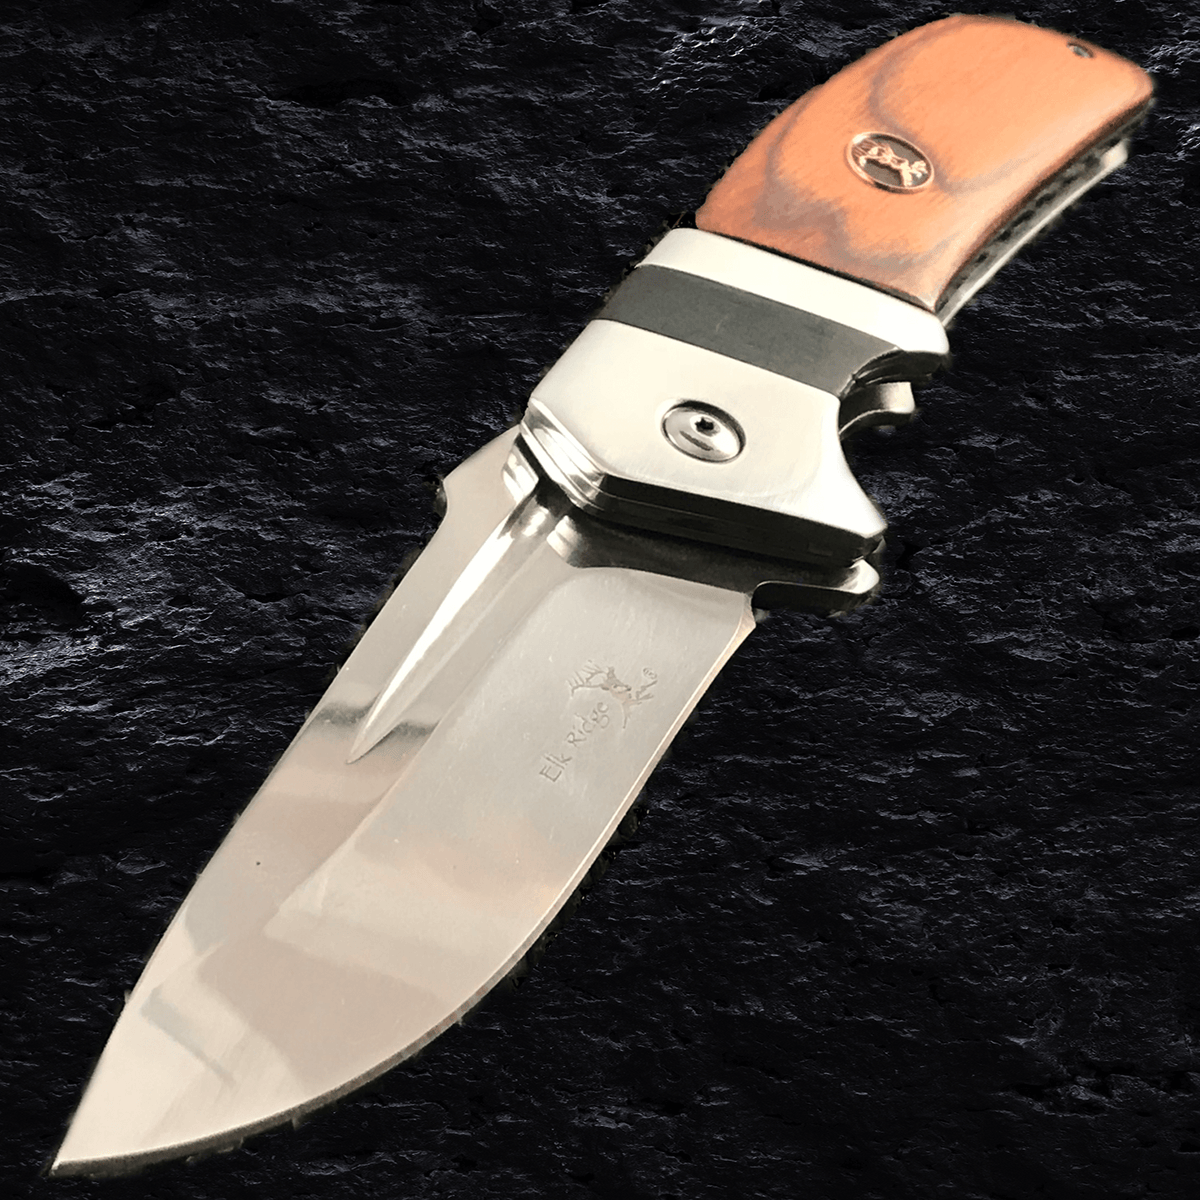 7.0 Elk Ridge Outdoor Hunting Skinning Pocket Knife Set ER-300CA